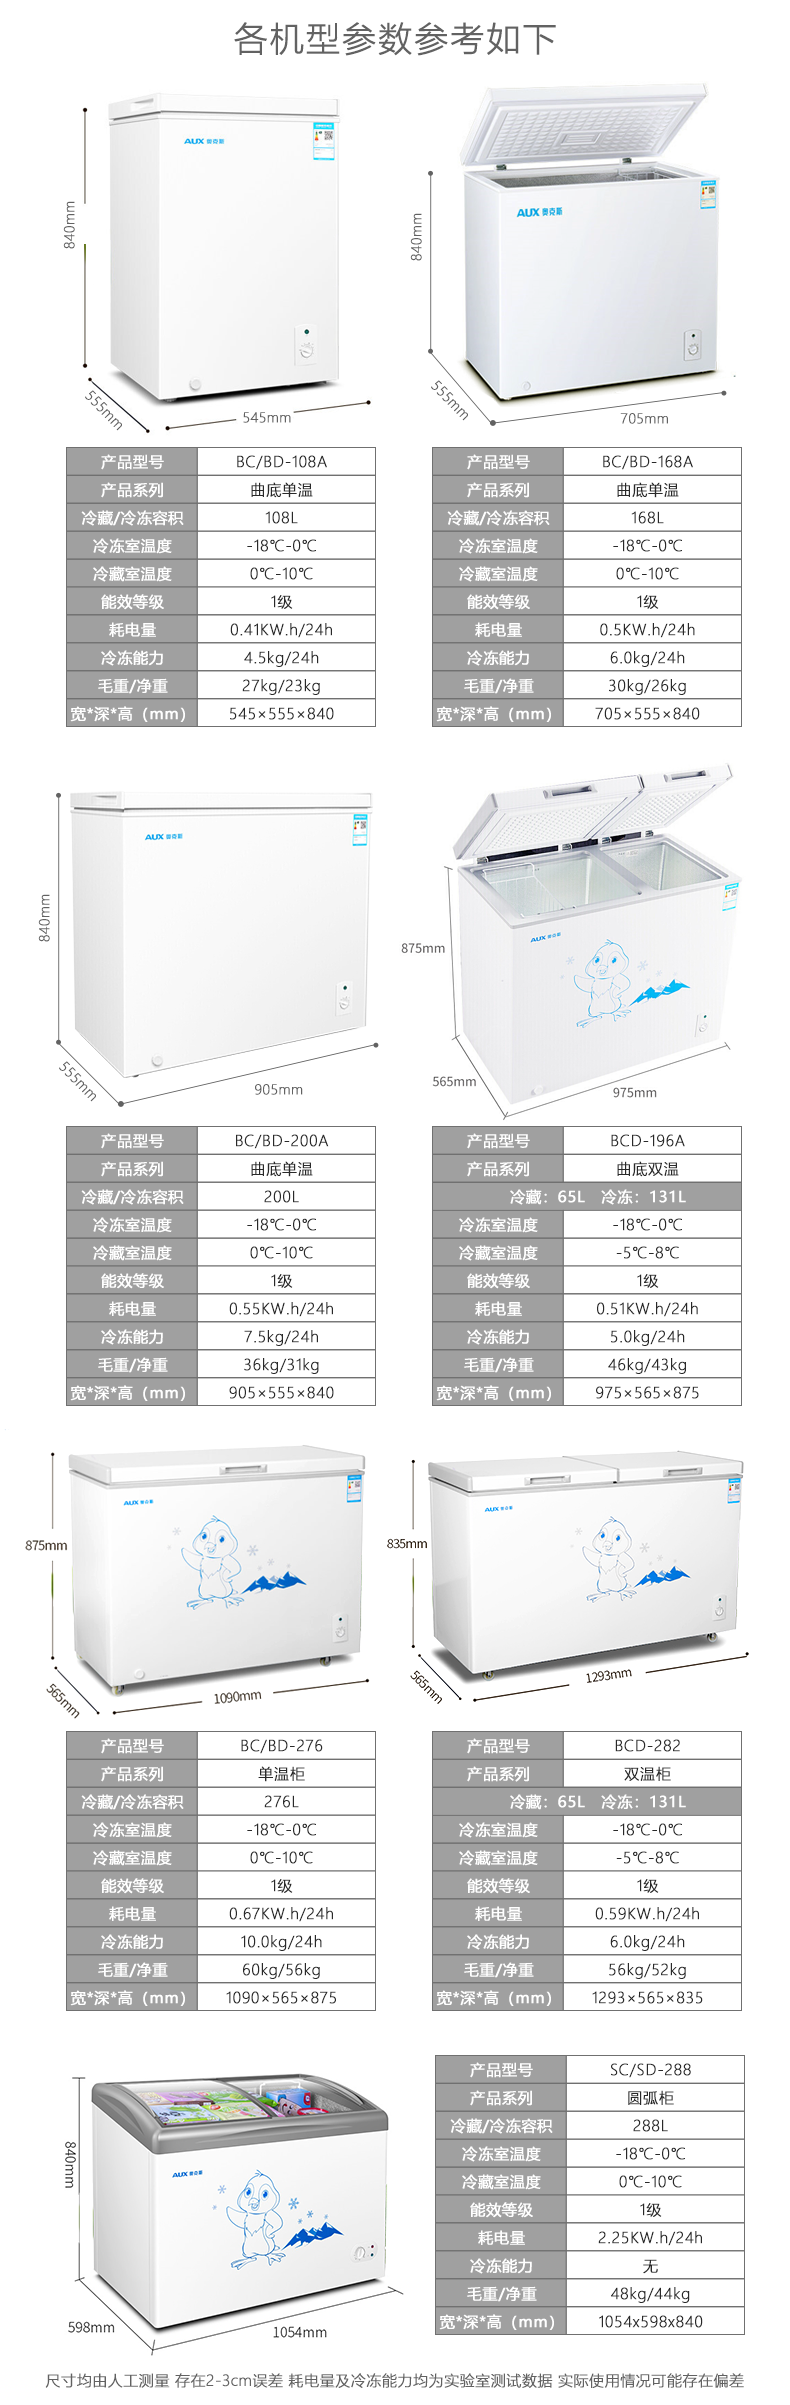 微型冰柜图片及价格表图片